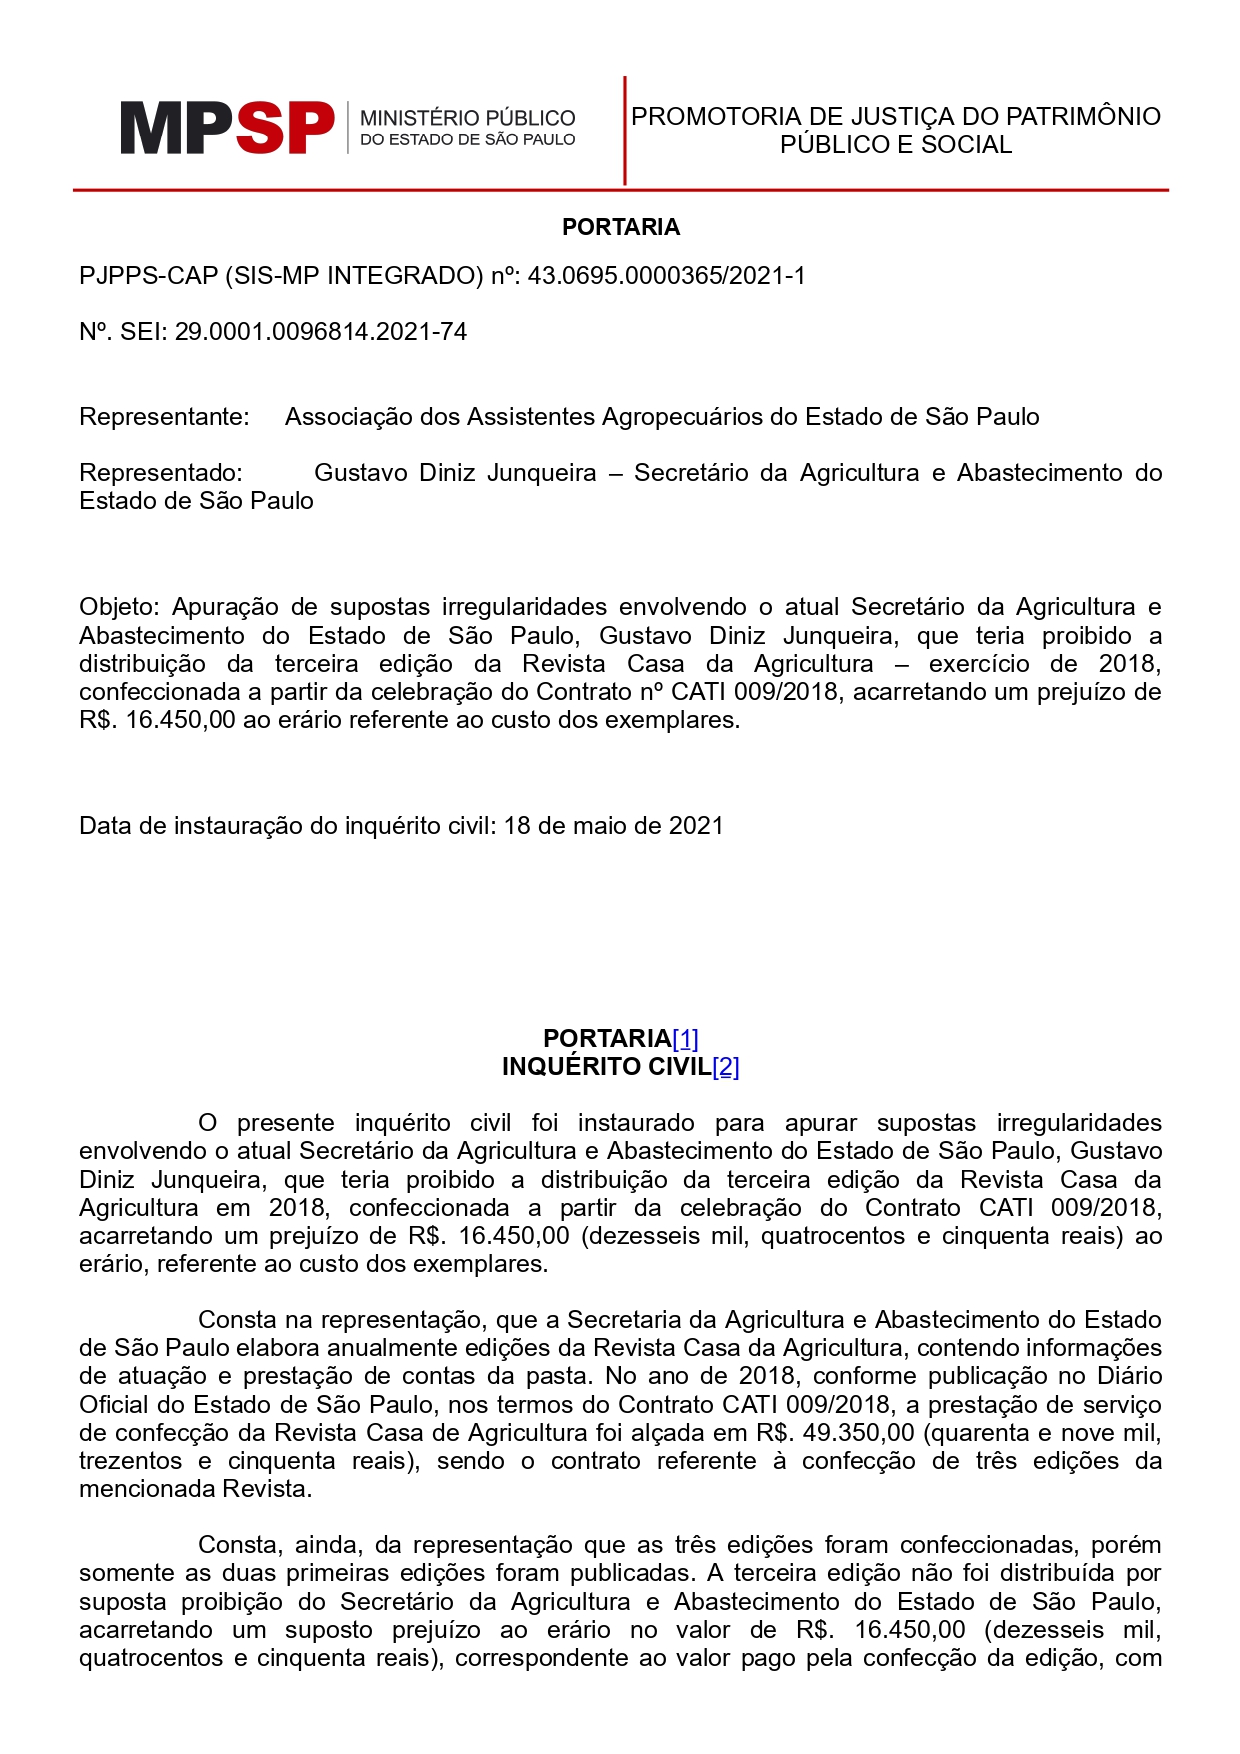 Associação dos Assistentes Agropecuários do Estado de São Paulo